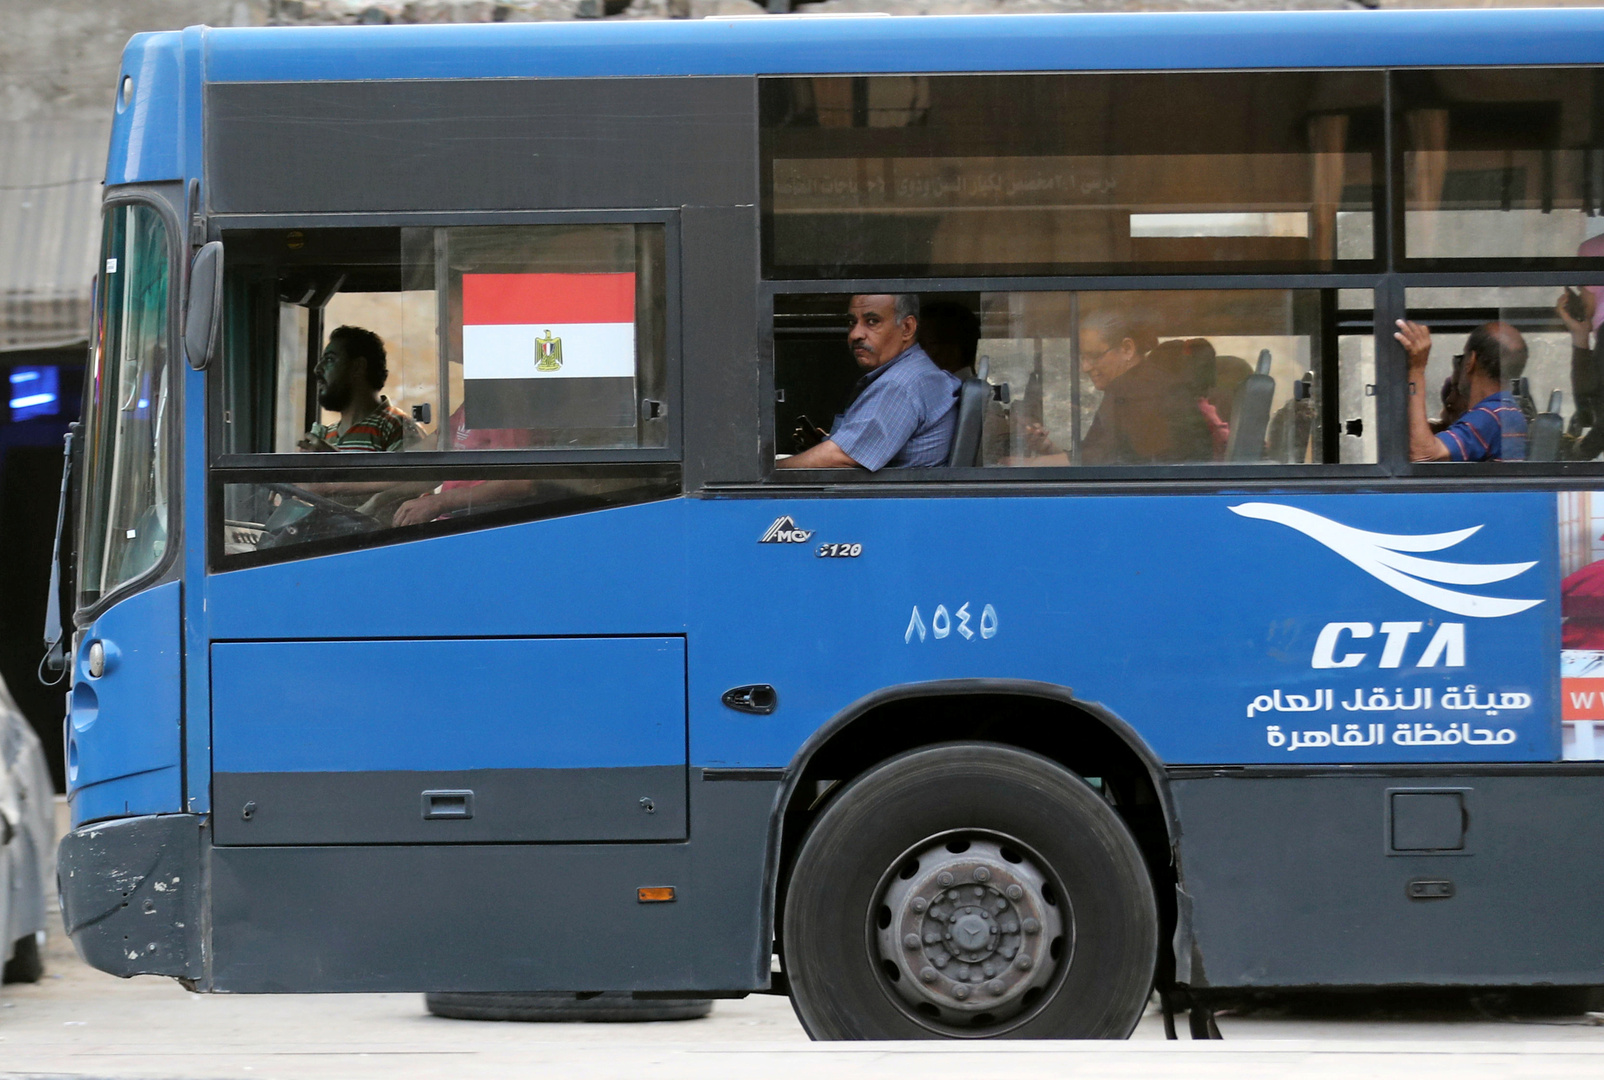 سائق “حافلة” مواصلات سوداني في مصر يطرب مواطنيه الركاب بأحد شوارع القاهرة على أنغام أغنيات (الزنق والهجيج)